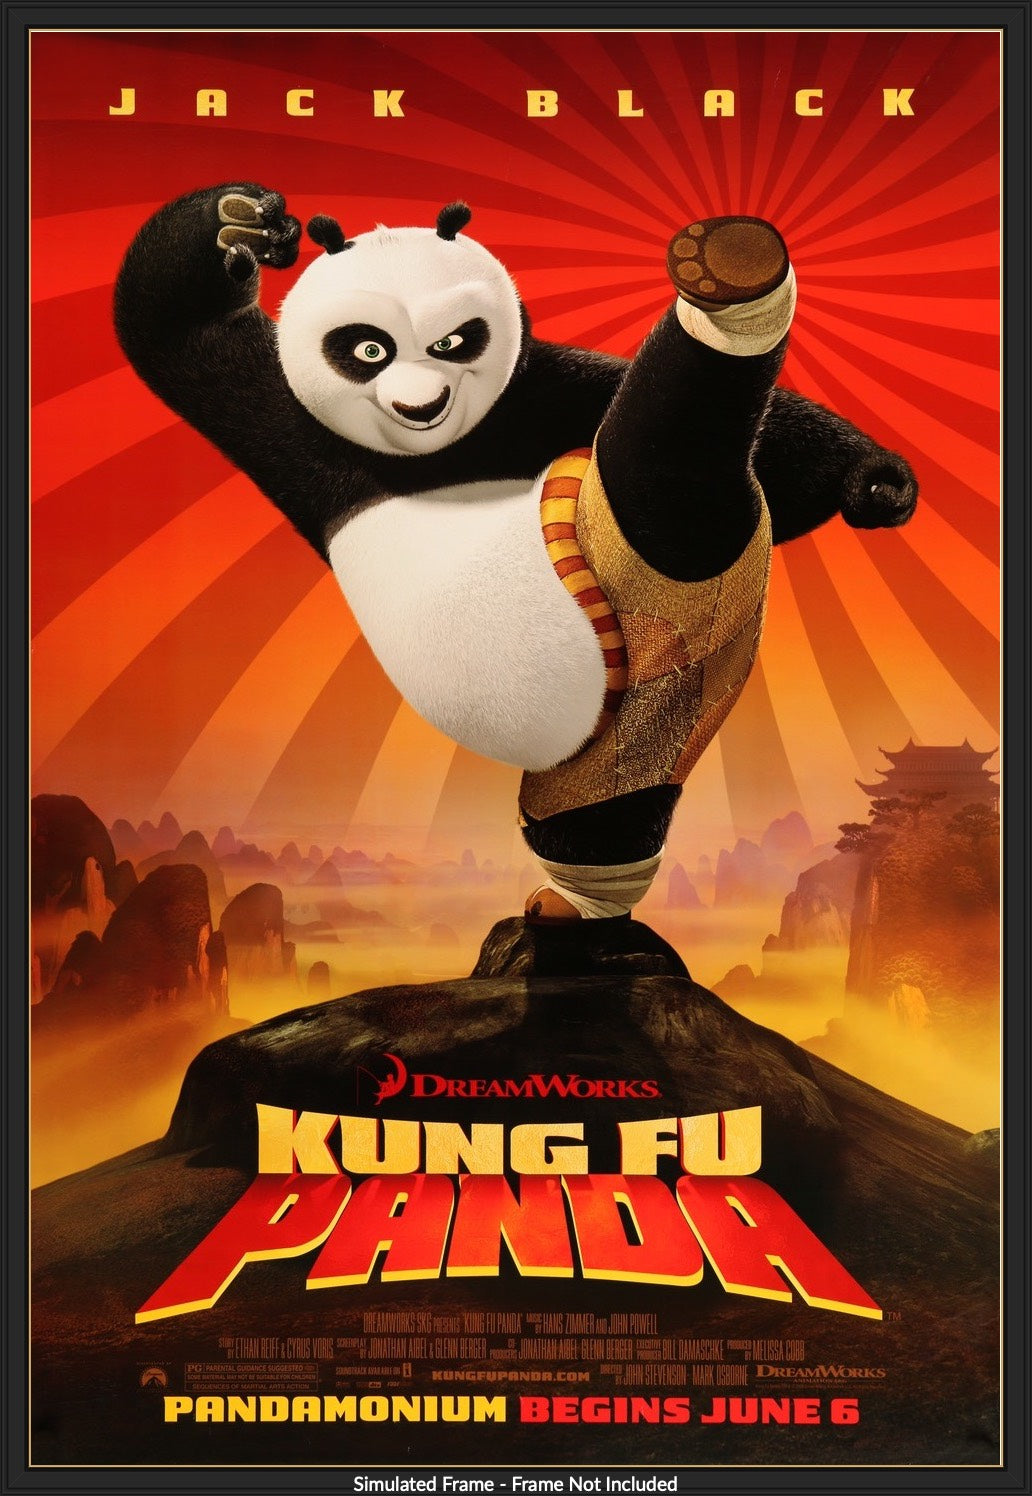 Kung Fu Panda (2008) original movie poster for sale at Original Film Art